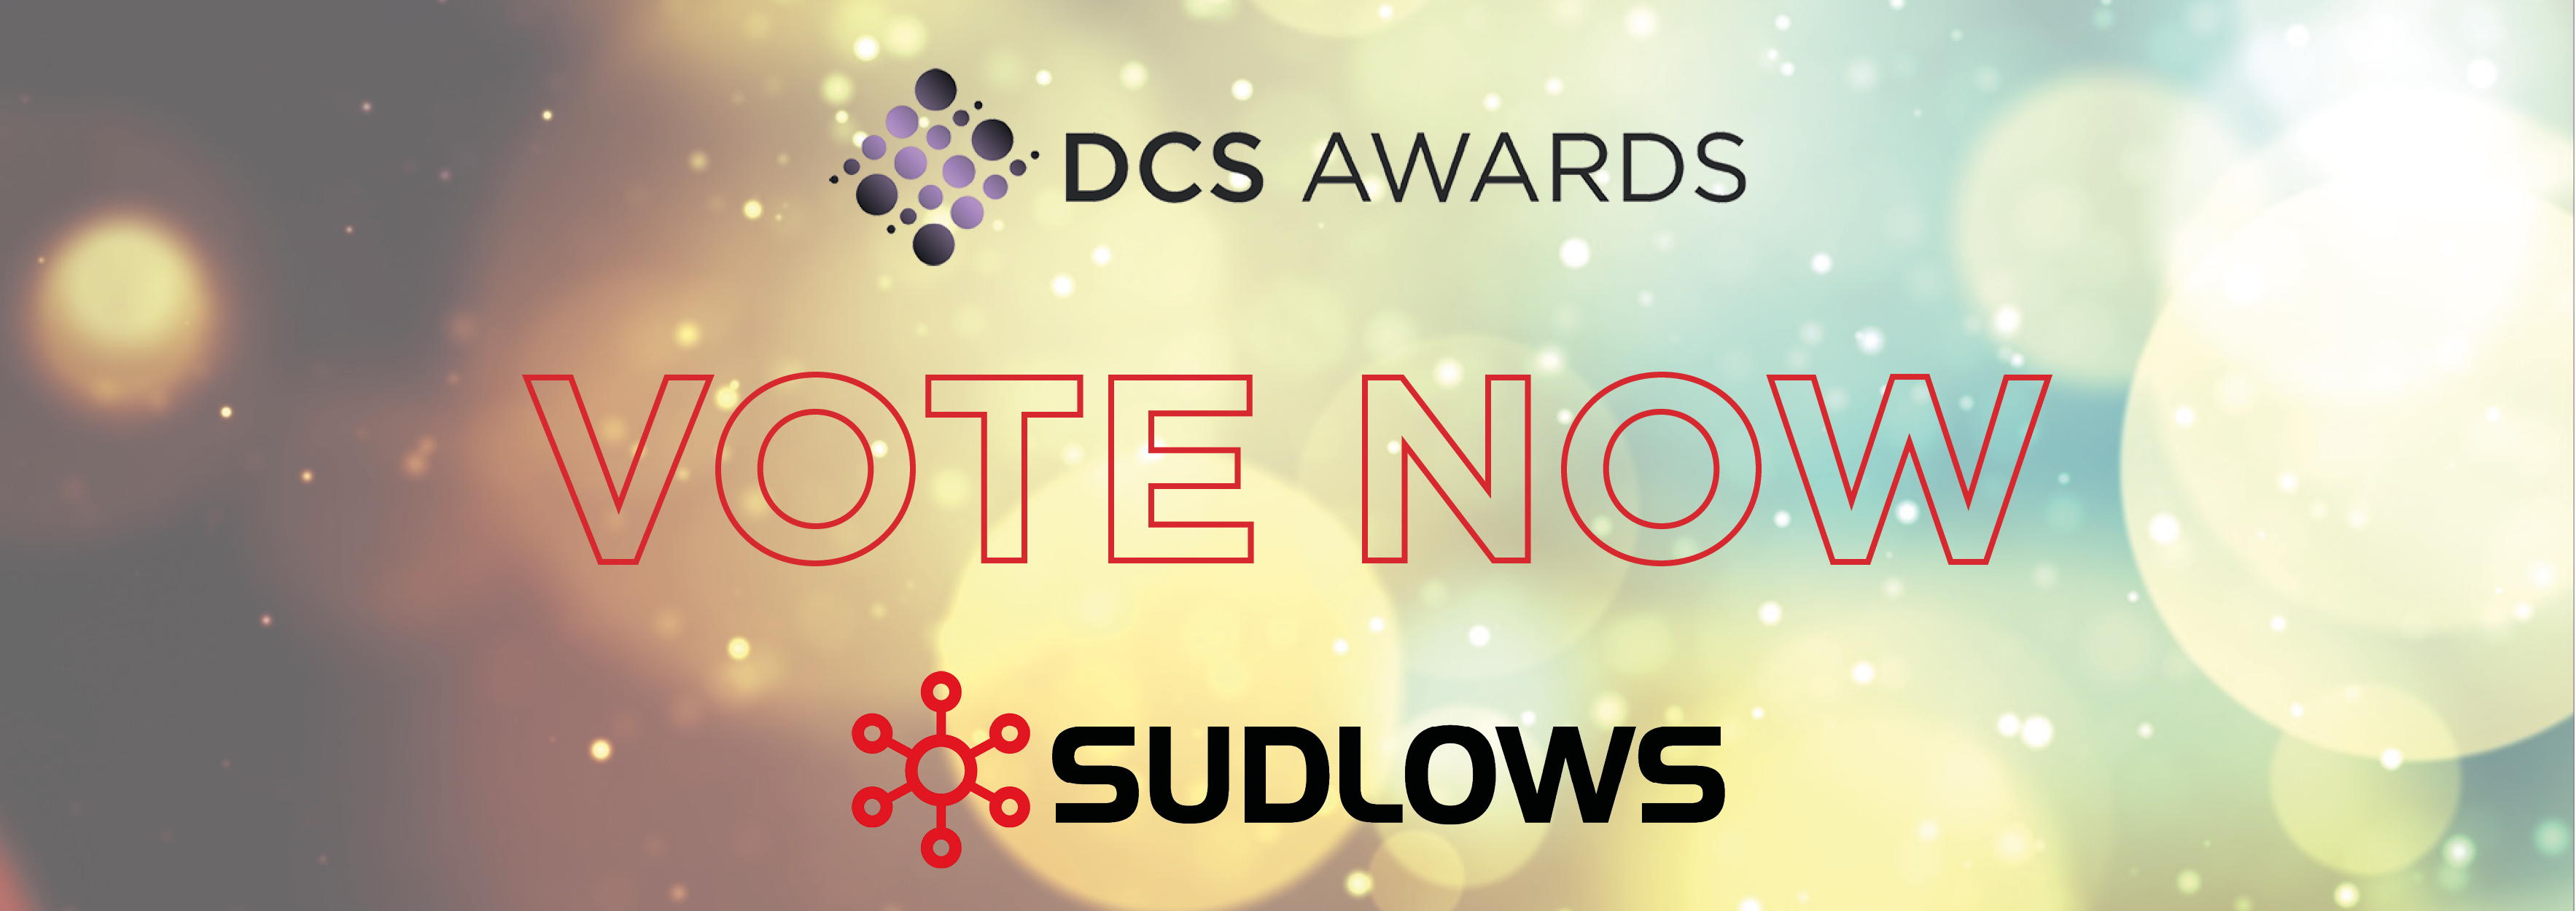 Vote Now DCS Awards